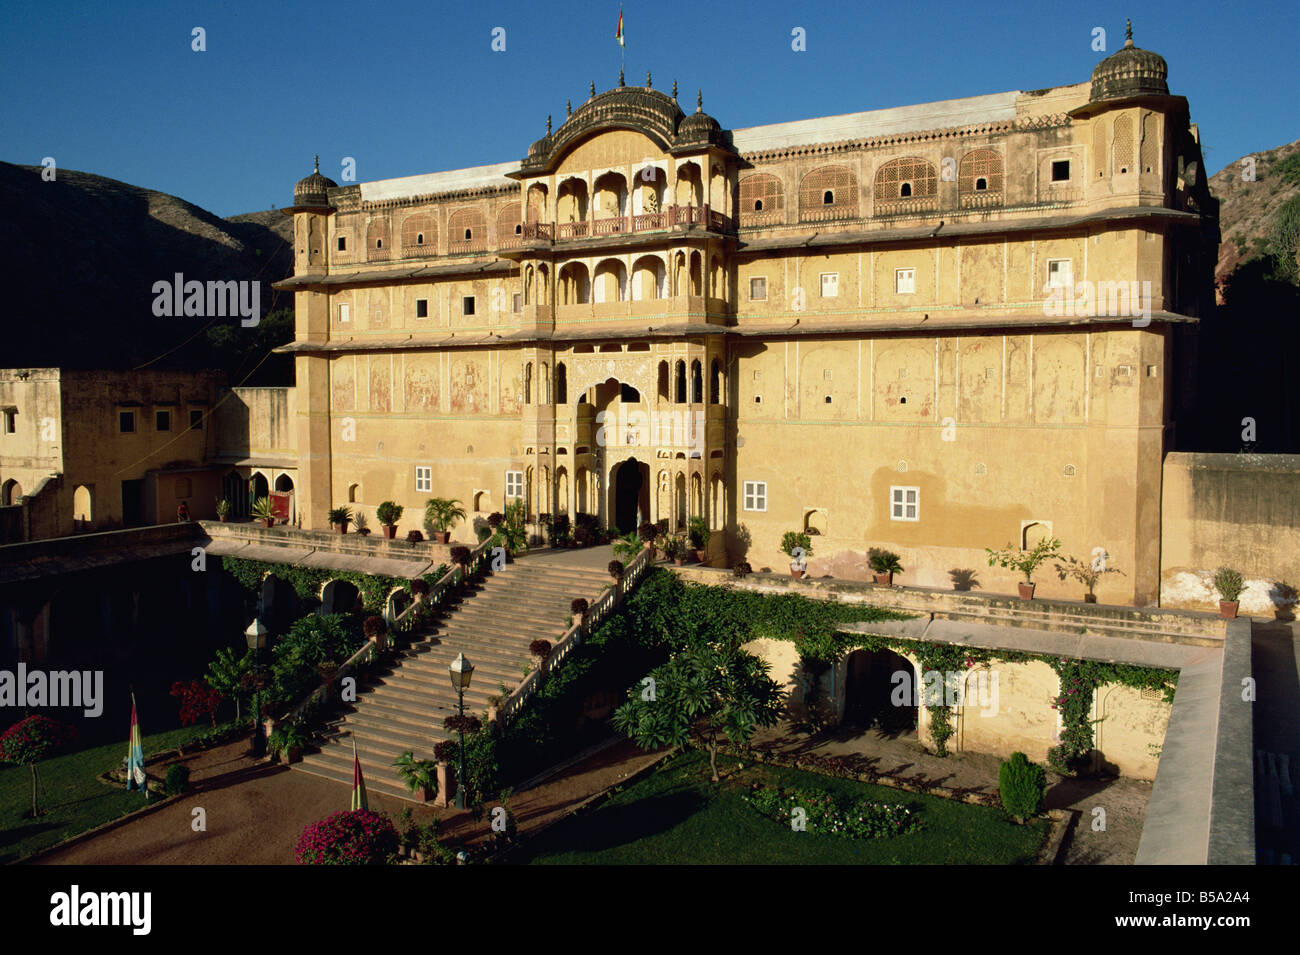 Le Rajput Samode Palace maintenant un hôtel près de Jaipur Rajasthan Inde Asie Banque D'Images